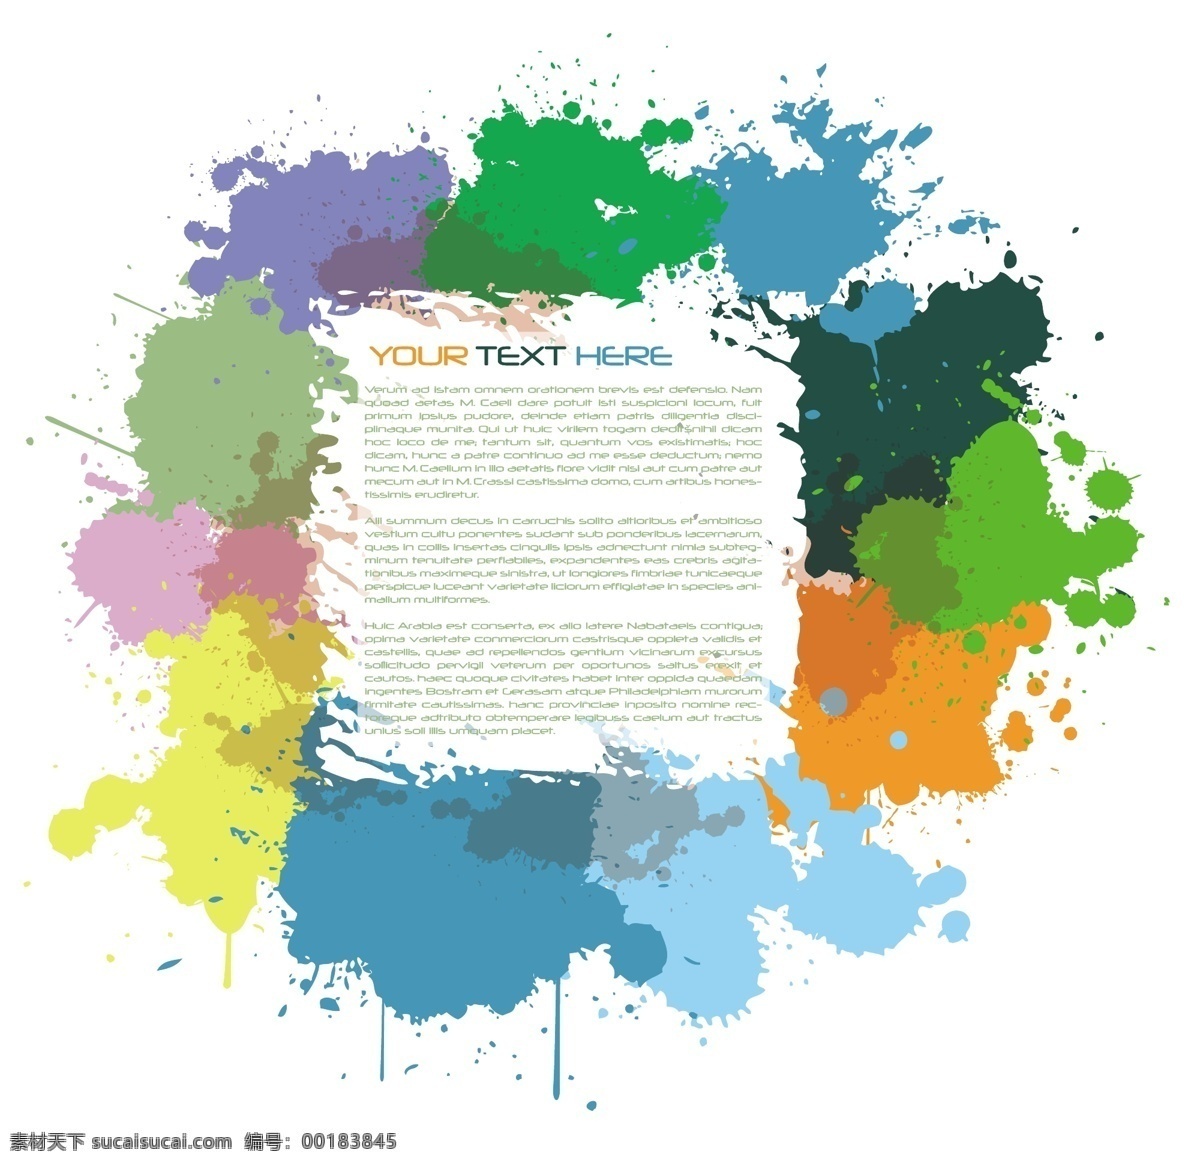 矢量 水墨 油漆 元素 彩色 墨迹 背景 模板下载 颜料 水彩 颜色 生活百科 矢量素材